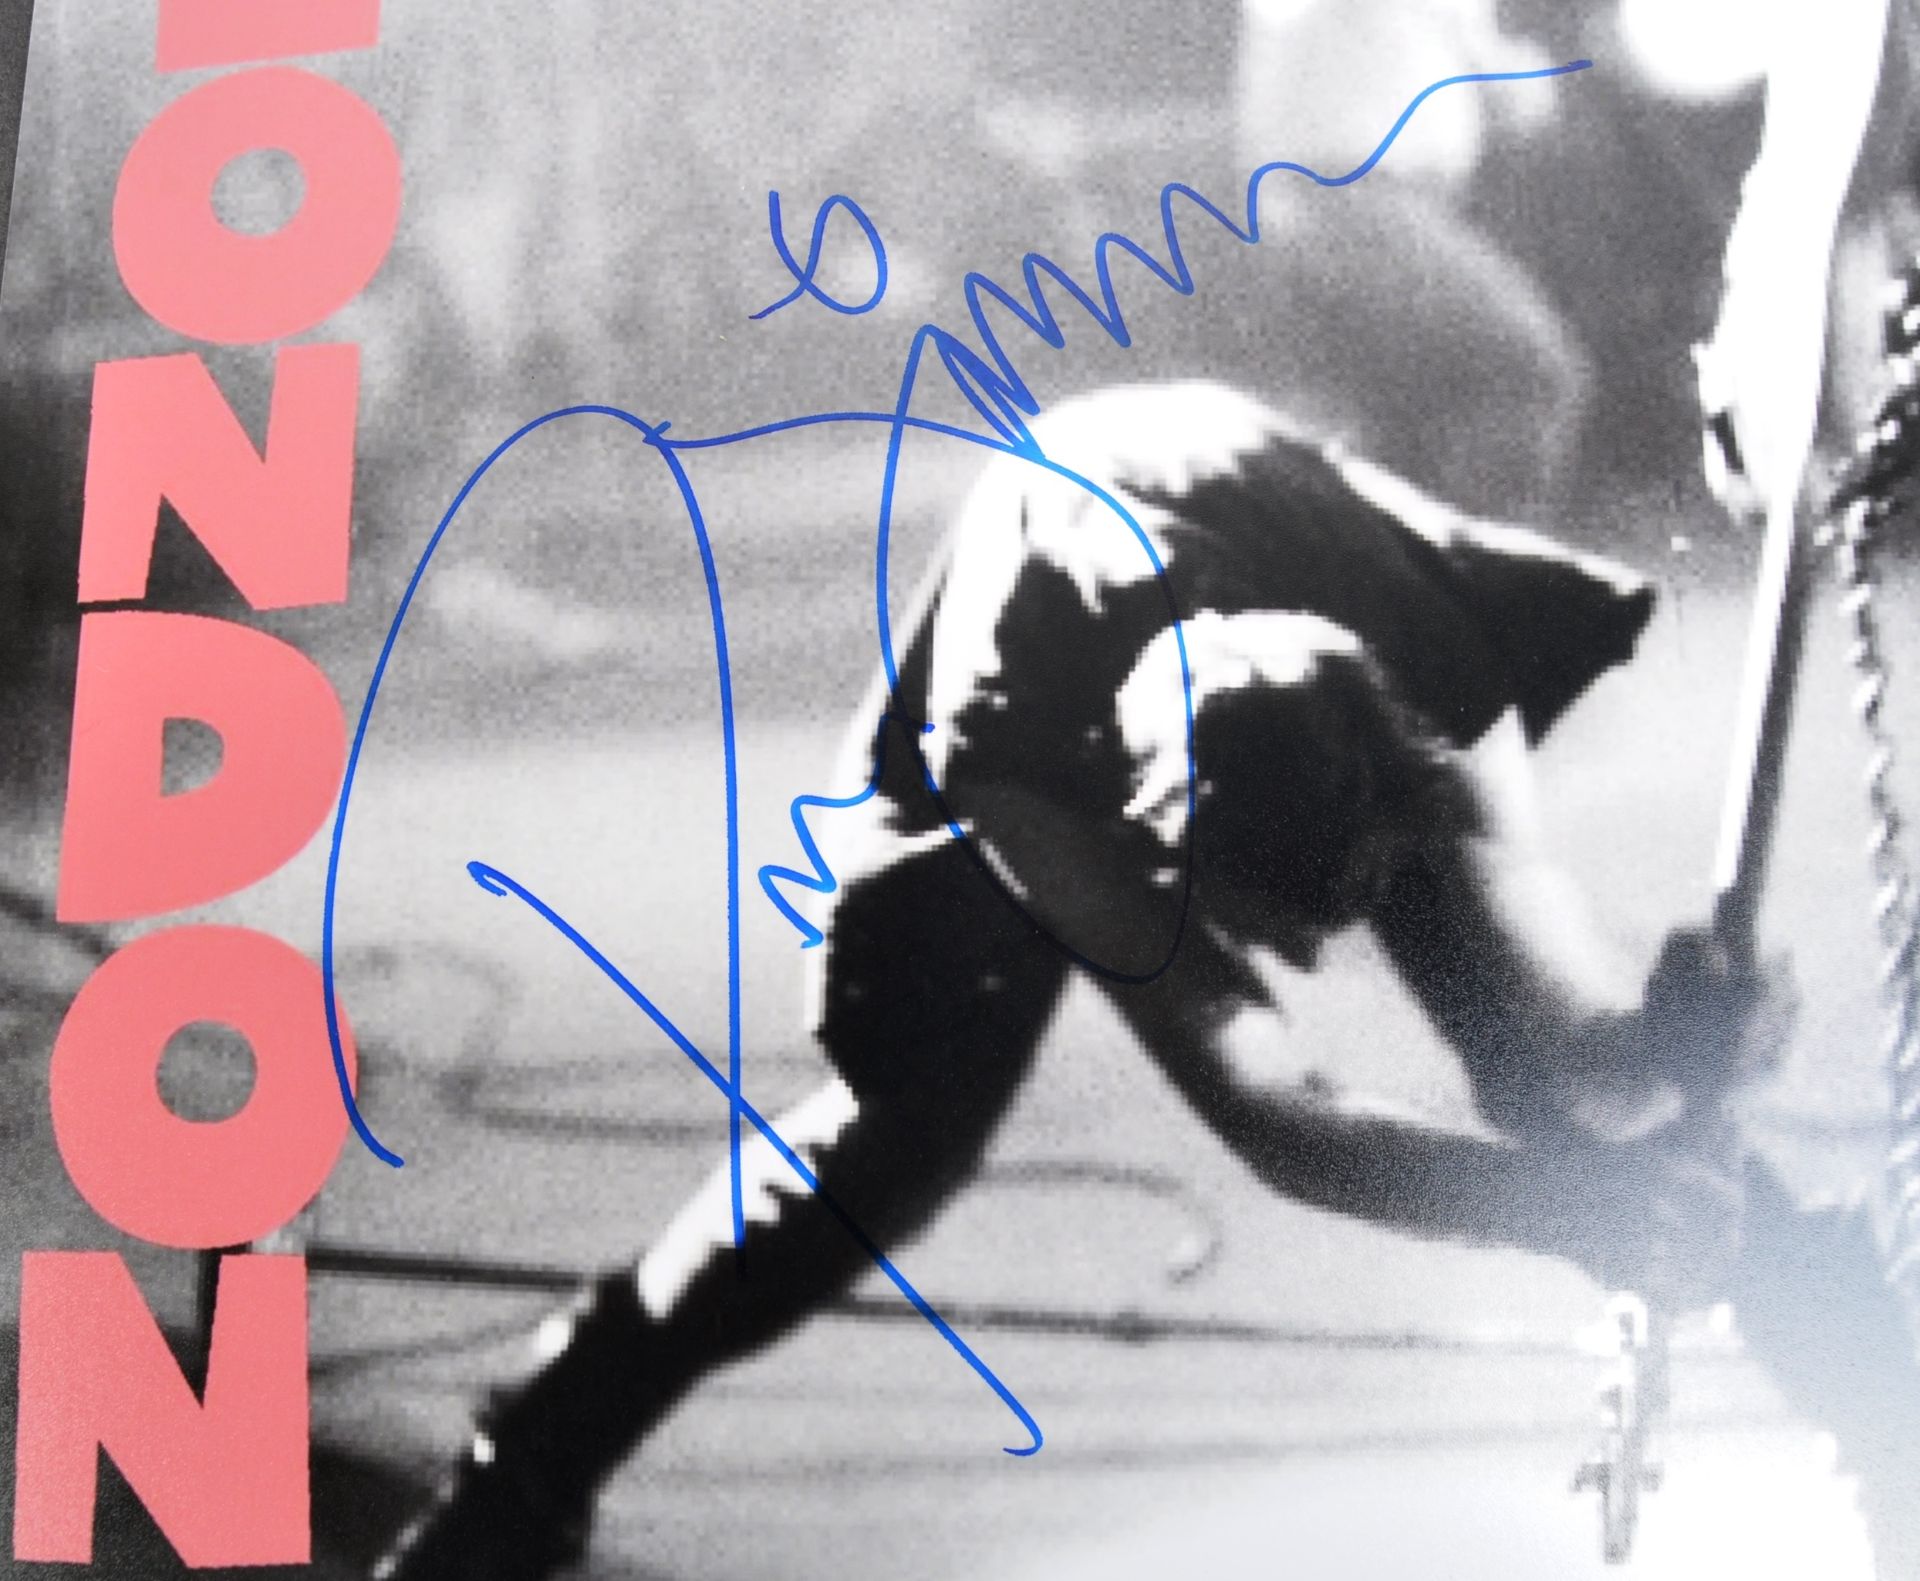 THE CLASH - PAUL SIMONON - AUTOGRAPHED ALBUM COVER - Image 2 of 2